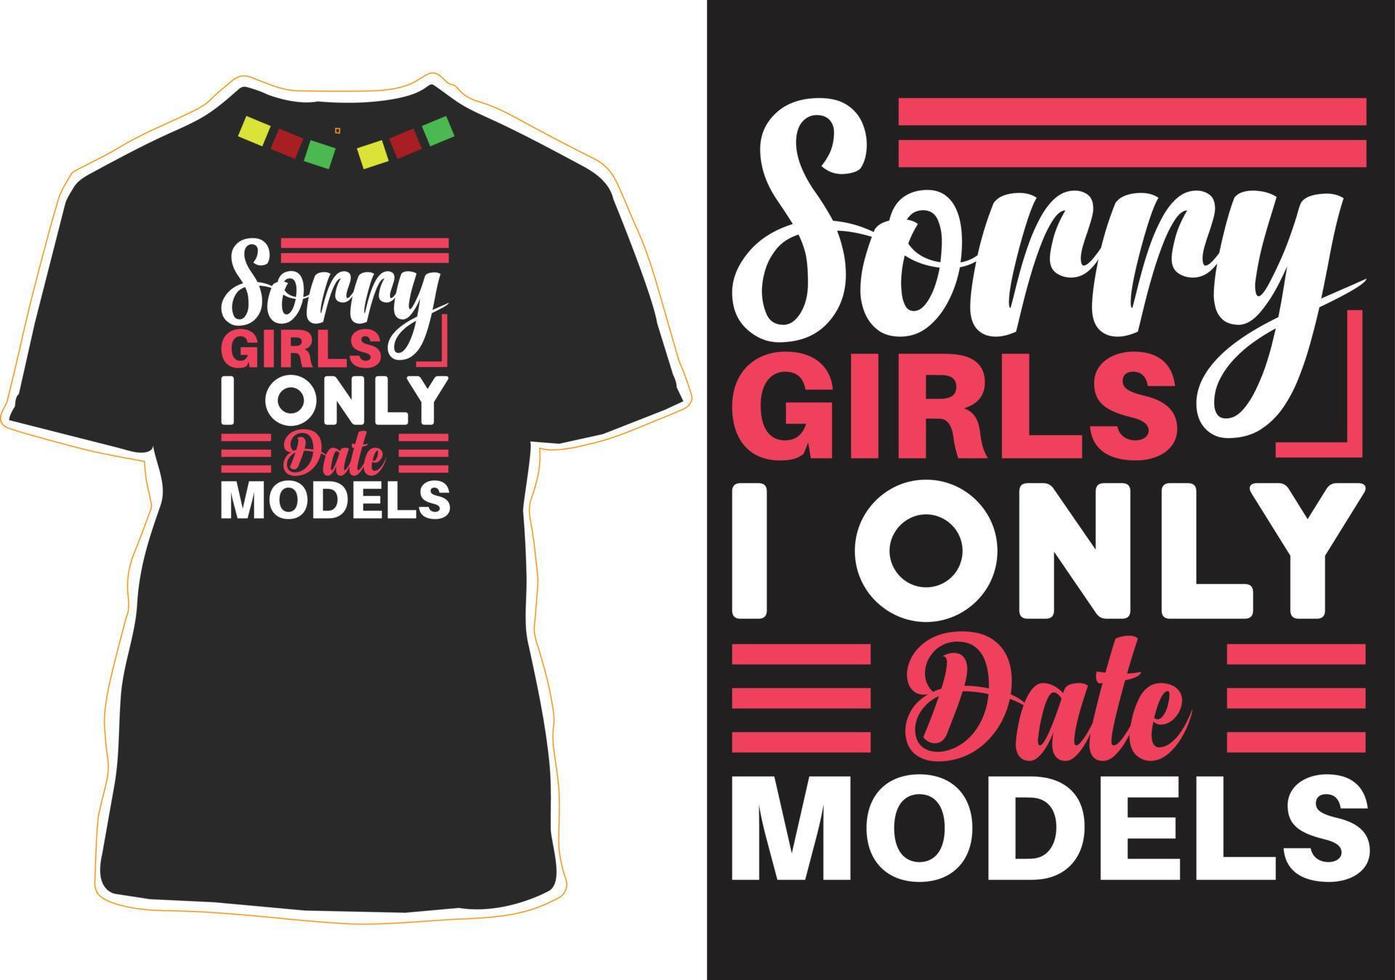 désolé les filles je ne date que des modèles typographie t shirt design vecteur